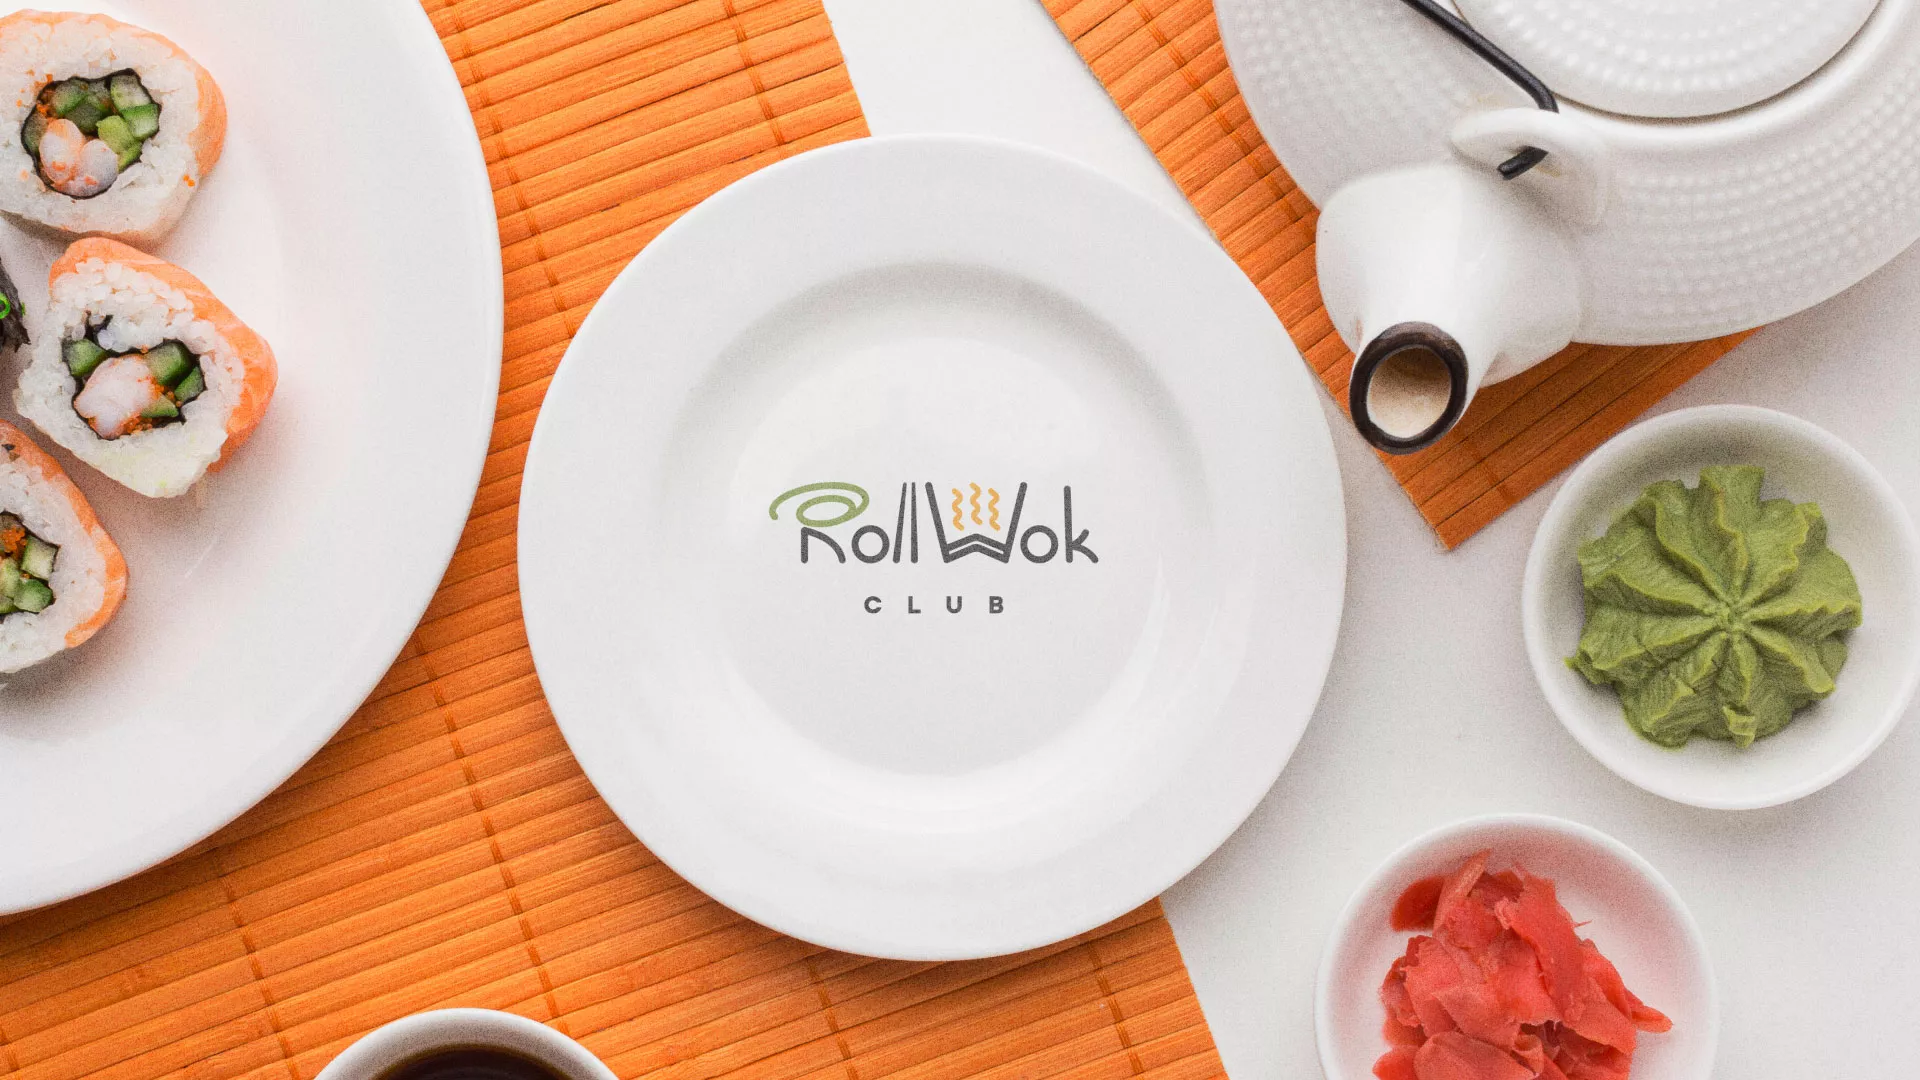 Разработка логотипа и фирменного стиля суши-бара «Roll Wok Club» в Ярцево